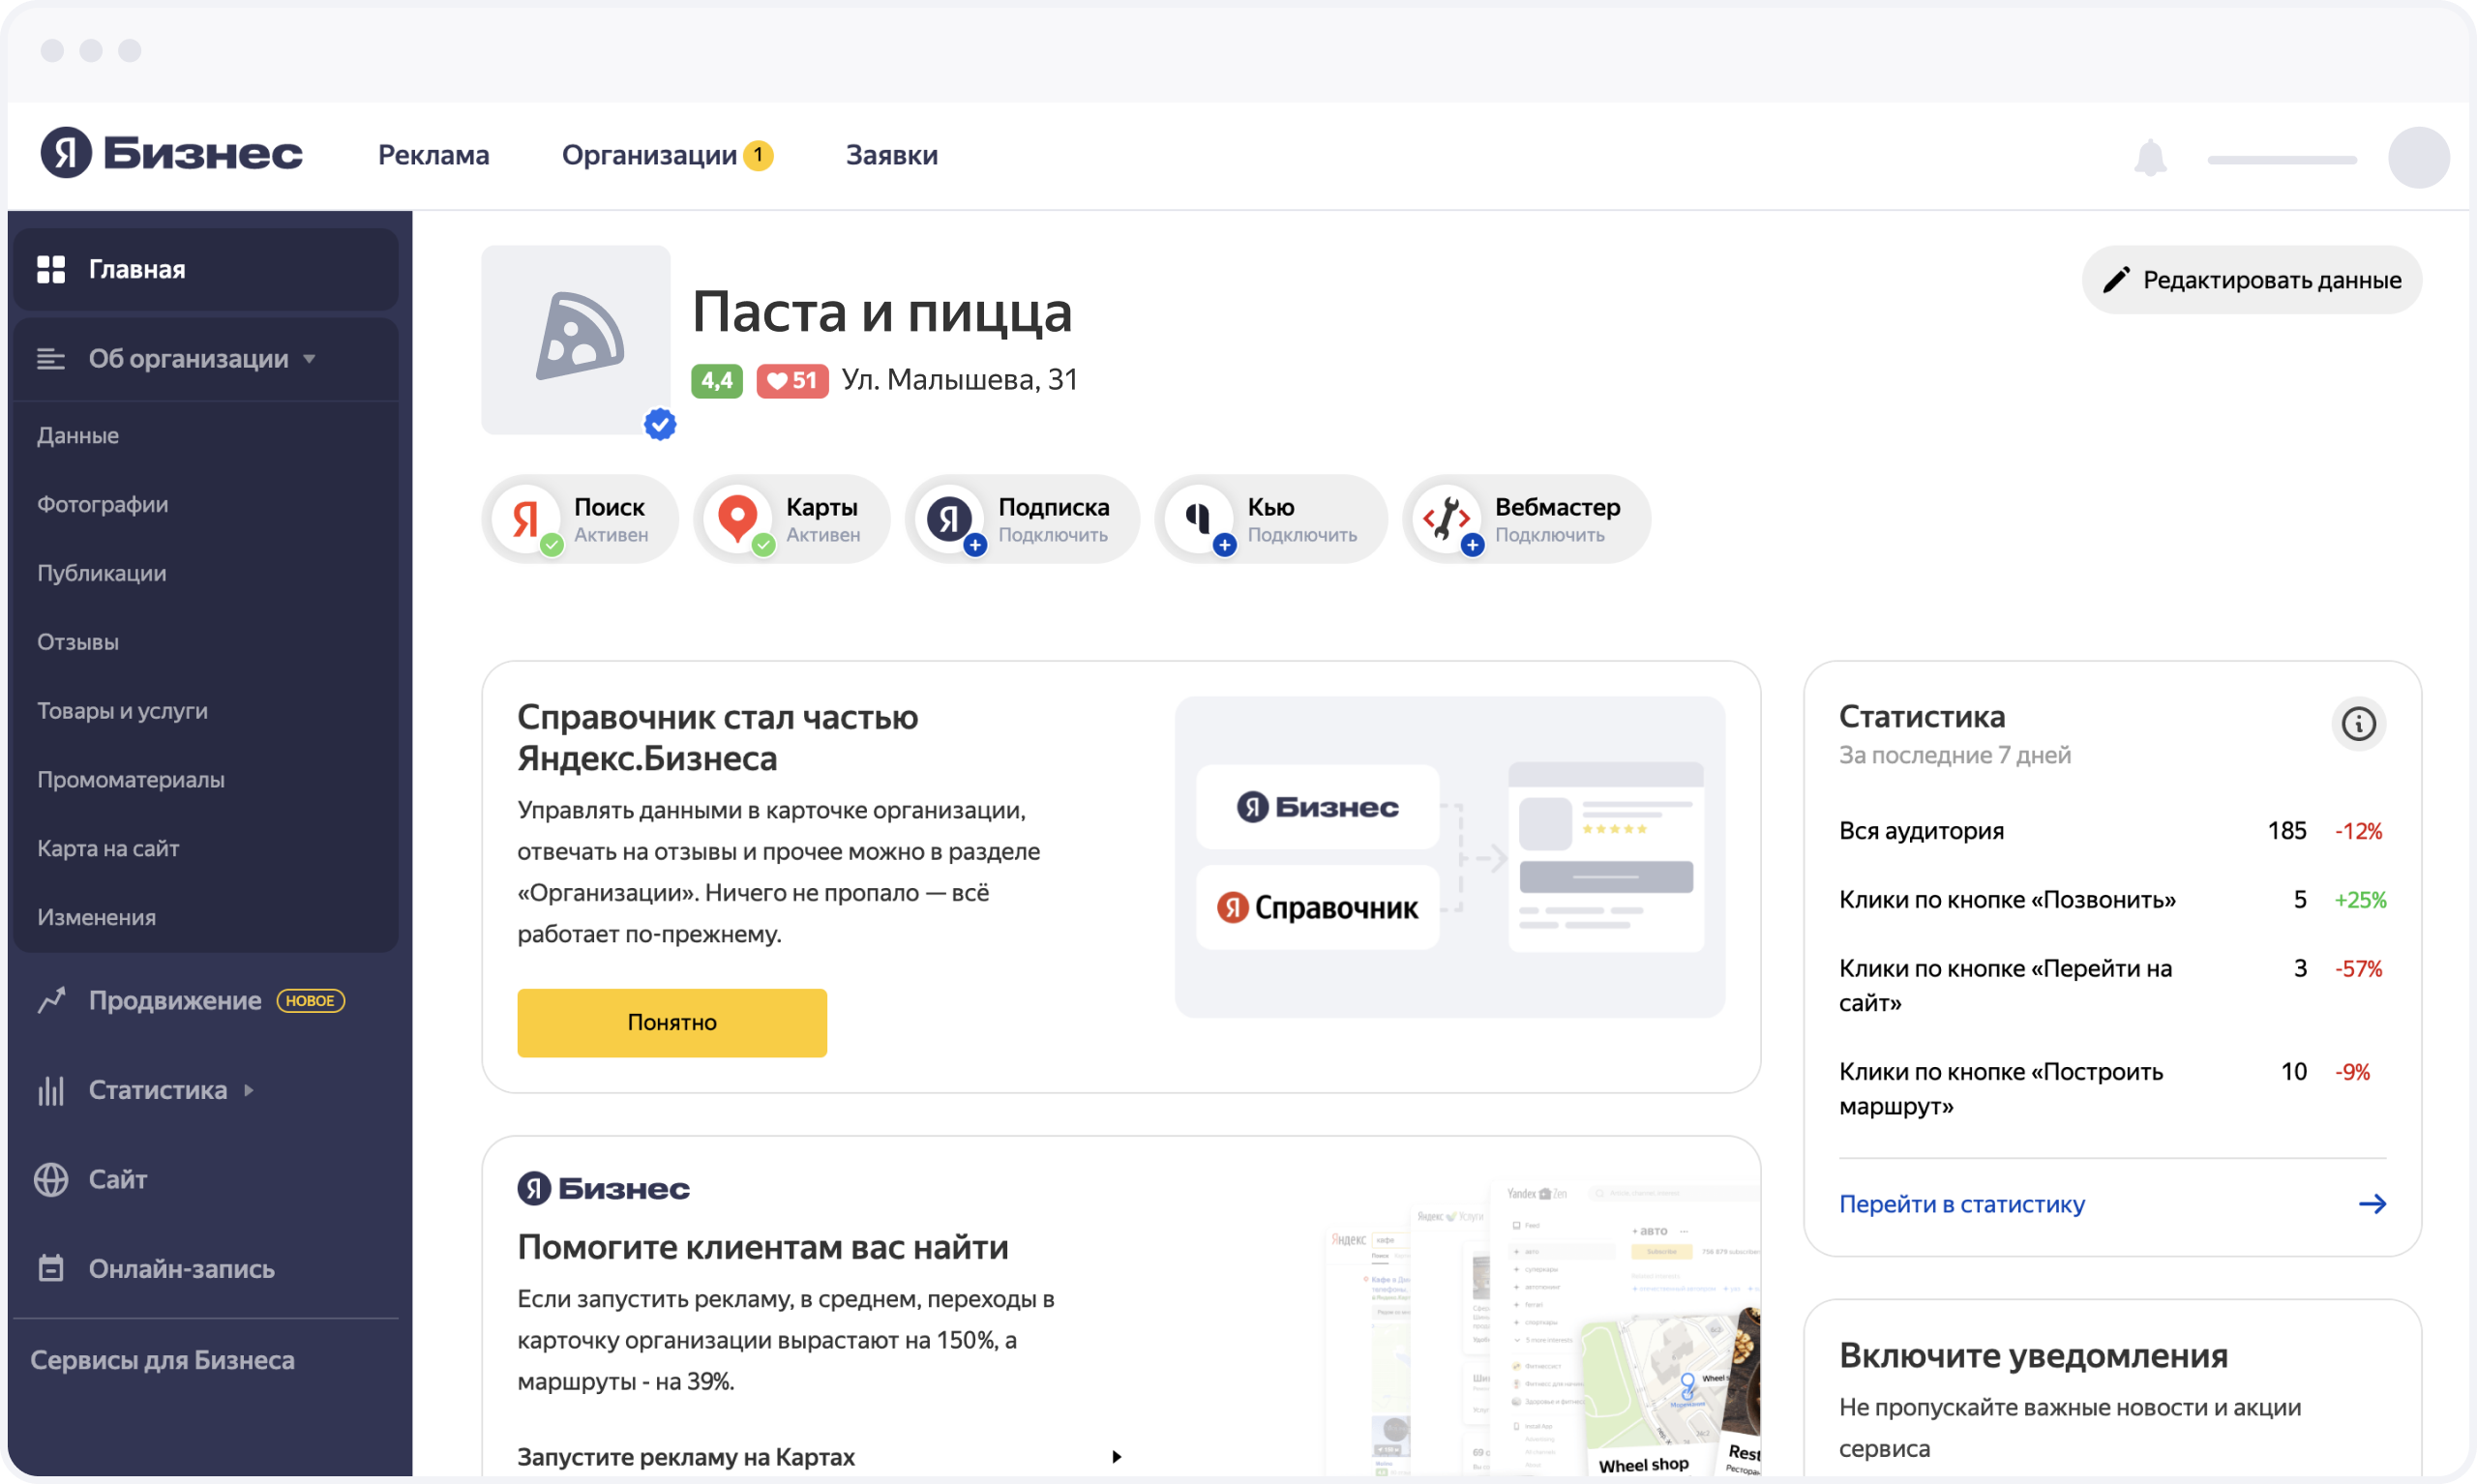 Обновленный интерфейс Яндекс.Бизнеса